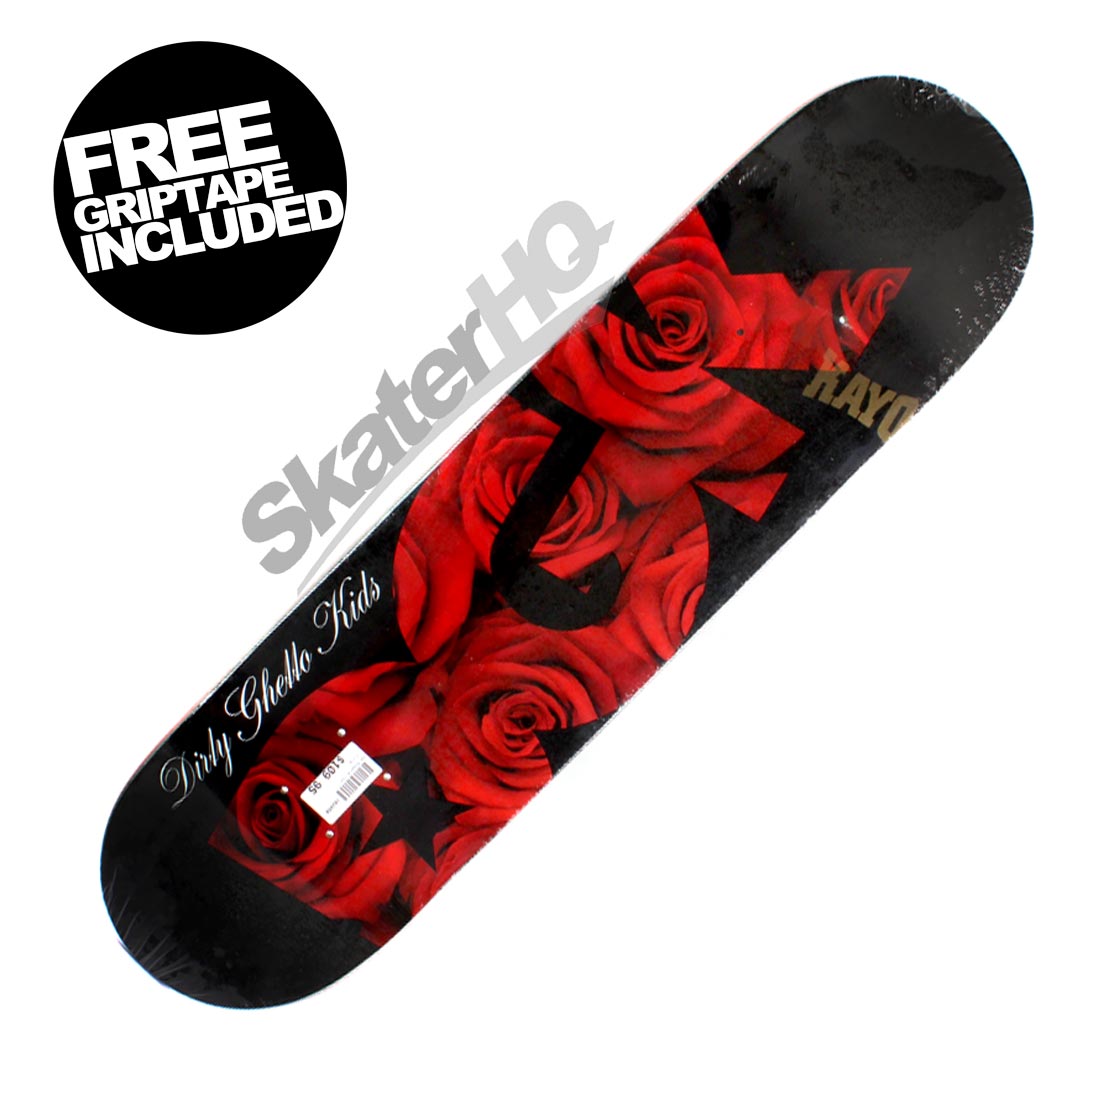 DGK Roses 8.0 Deck WEB Skateboard Decks Modern Street